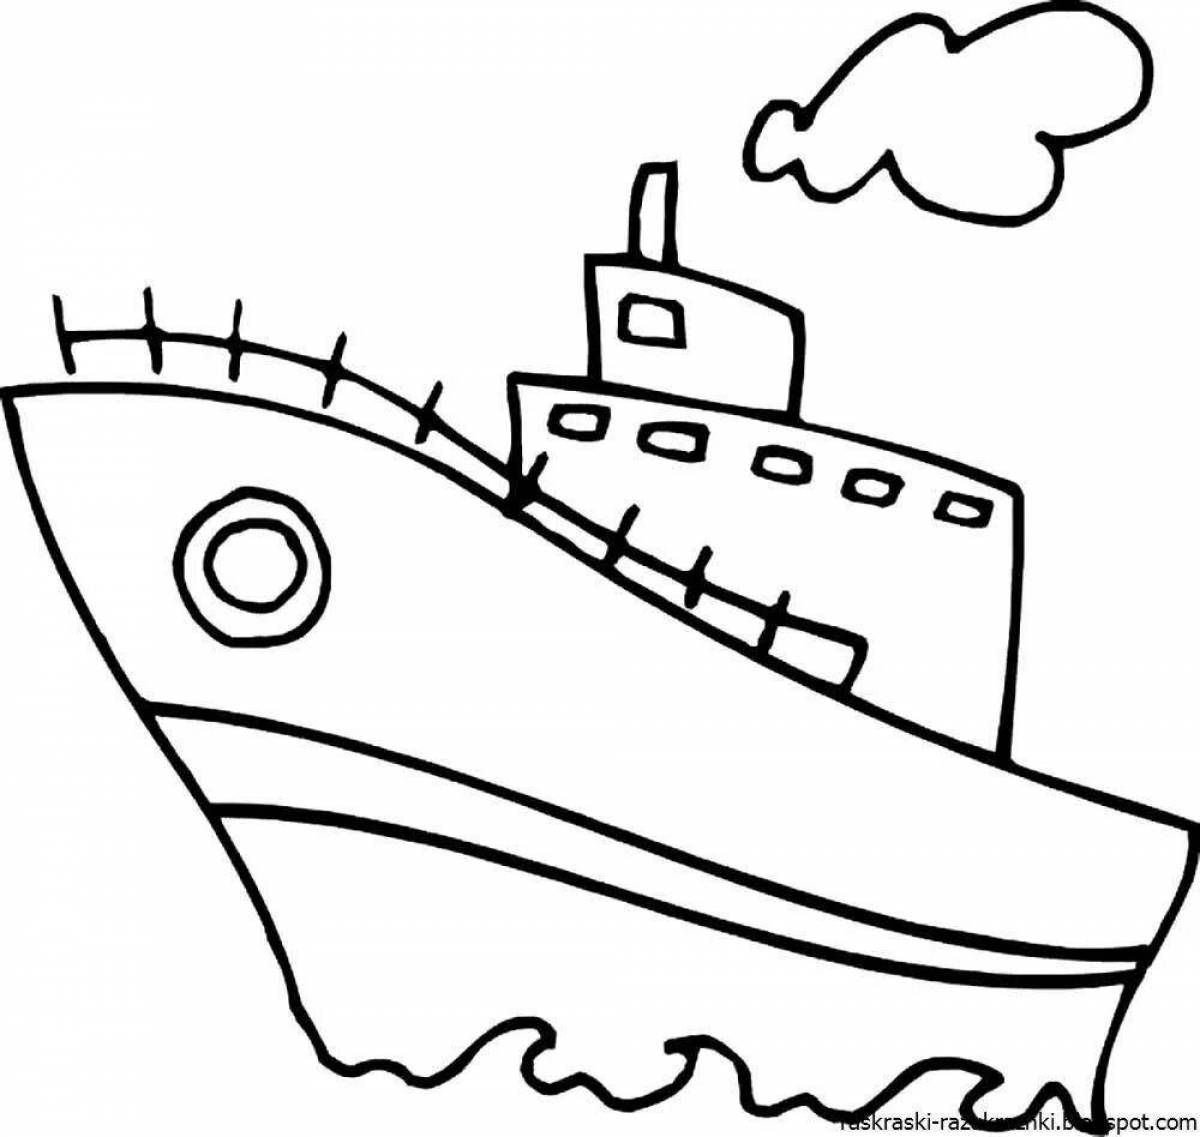 Захватывающий дух корабль-раскраска для детей 5-6 лет